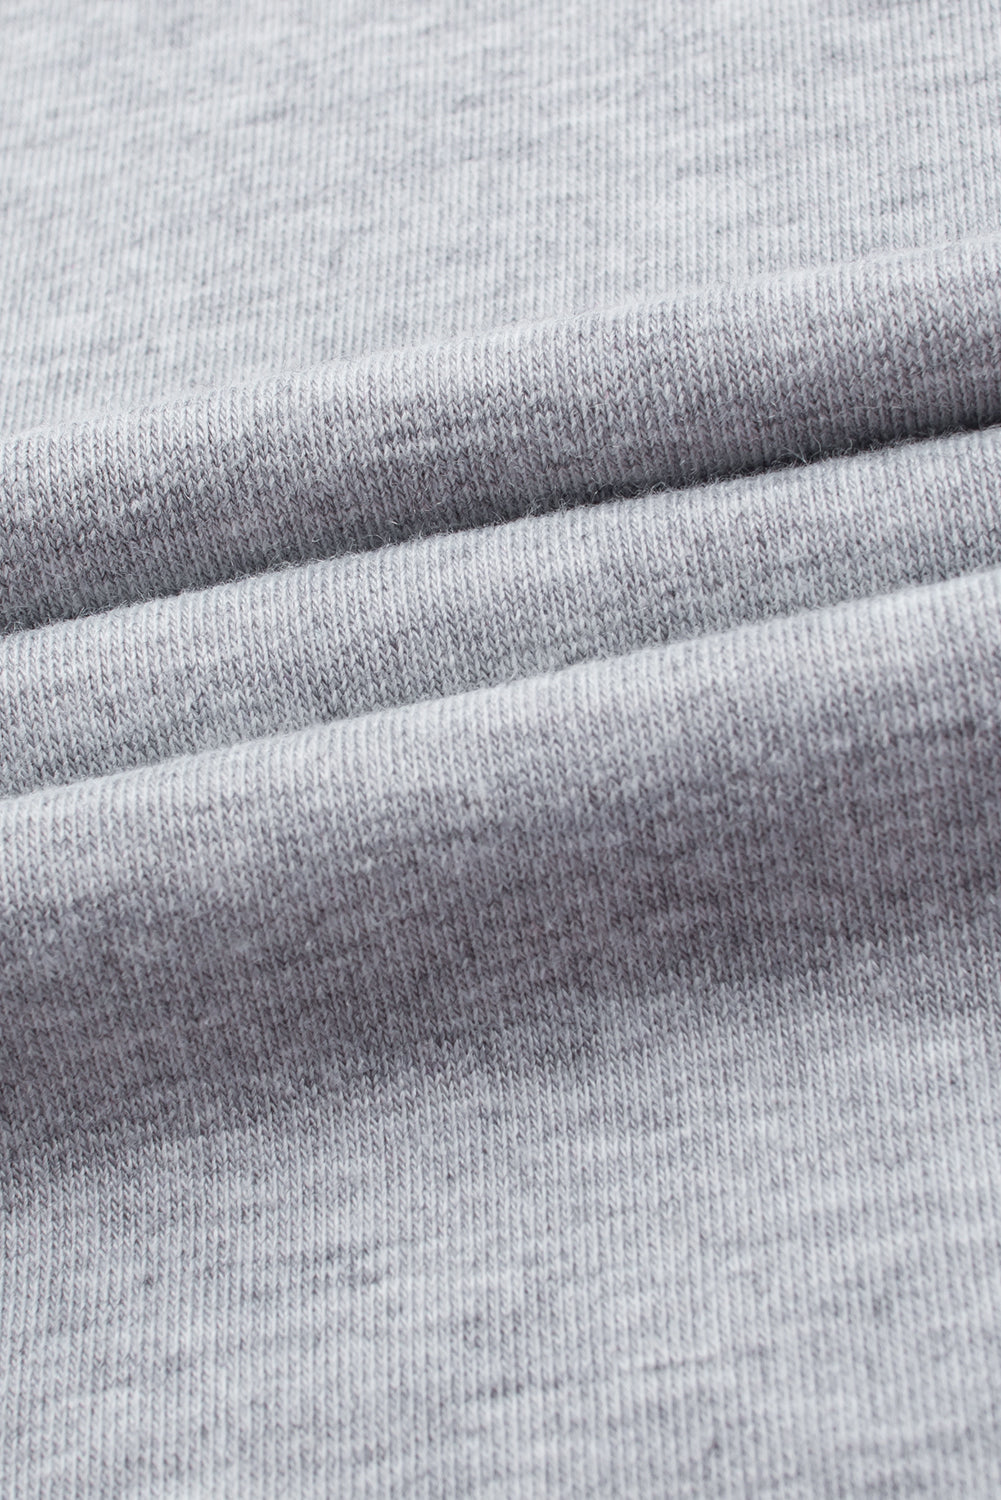 Siv enobarvni široki kombinezon z naramnicami in širokimi nogavicami